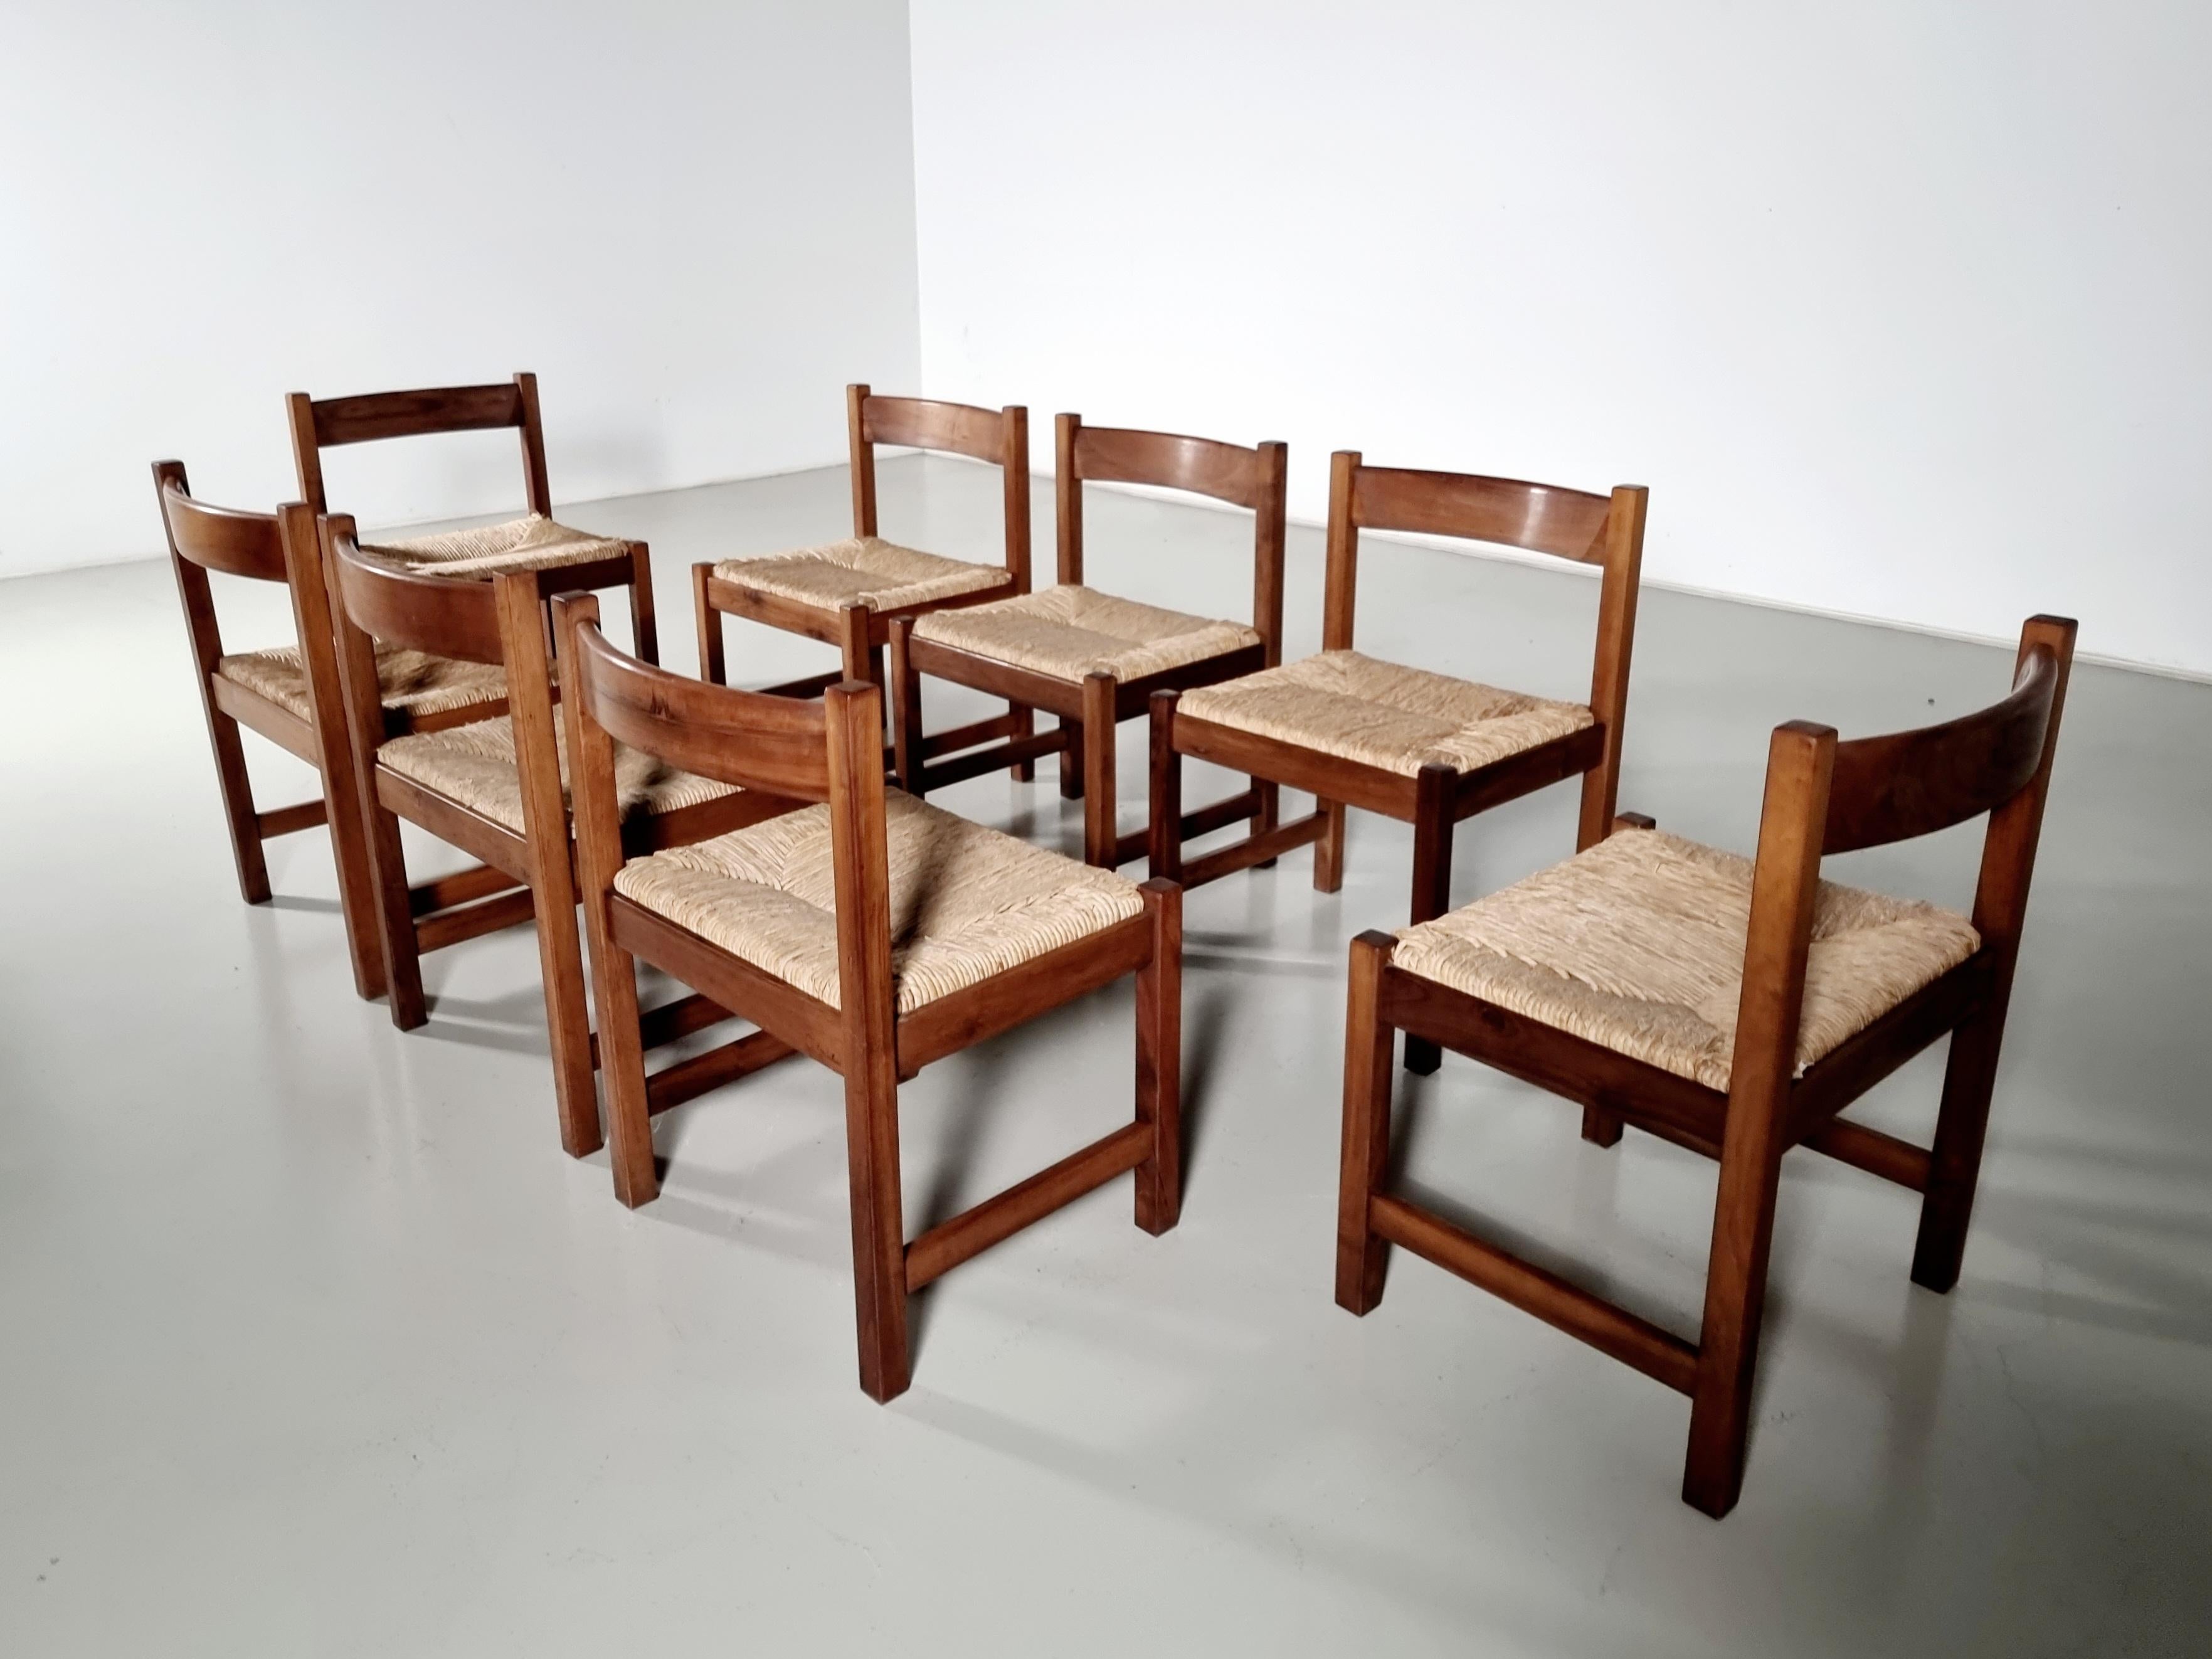 Straw Torbecchia Chairs in walnut and rush, Giovanni Michelucci for Poltronova, 1960s For Sale